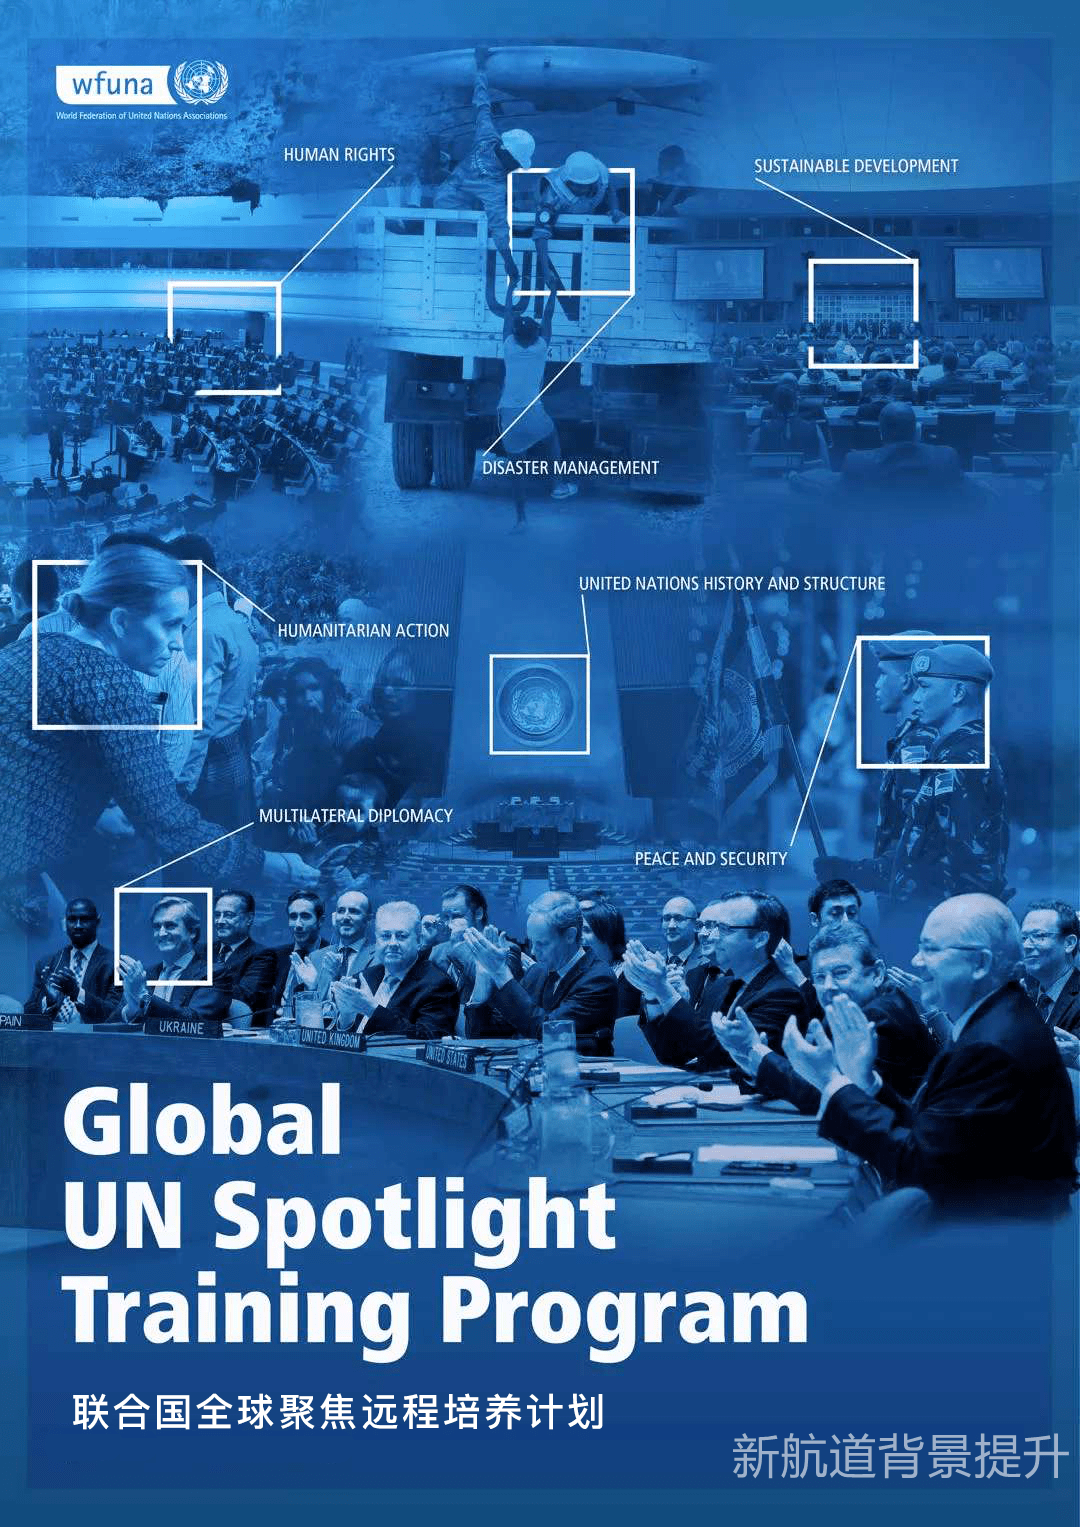 背景提升丨第六期12月unspotlight联合国全球聚焦远程培养计划开放